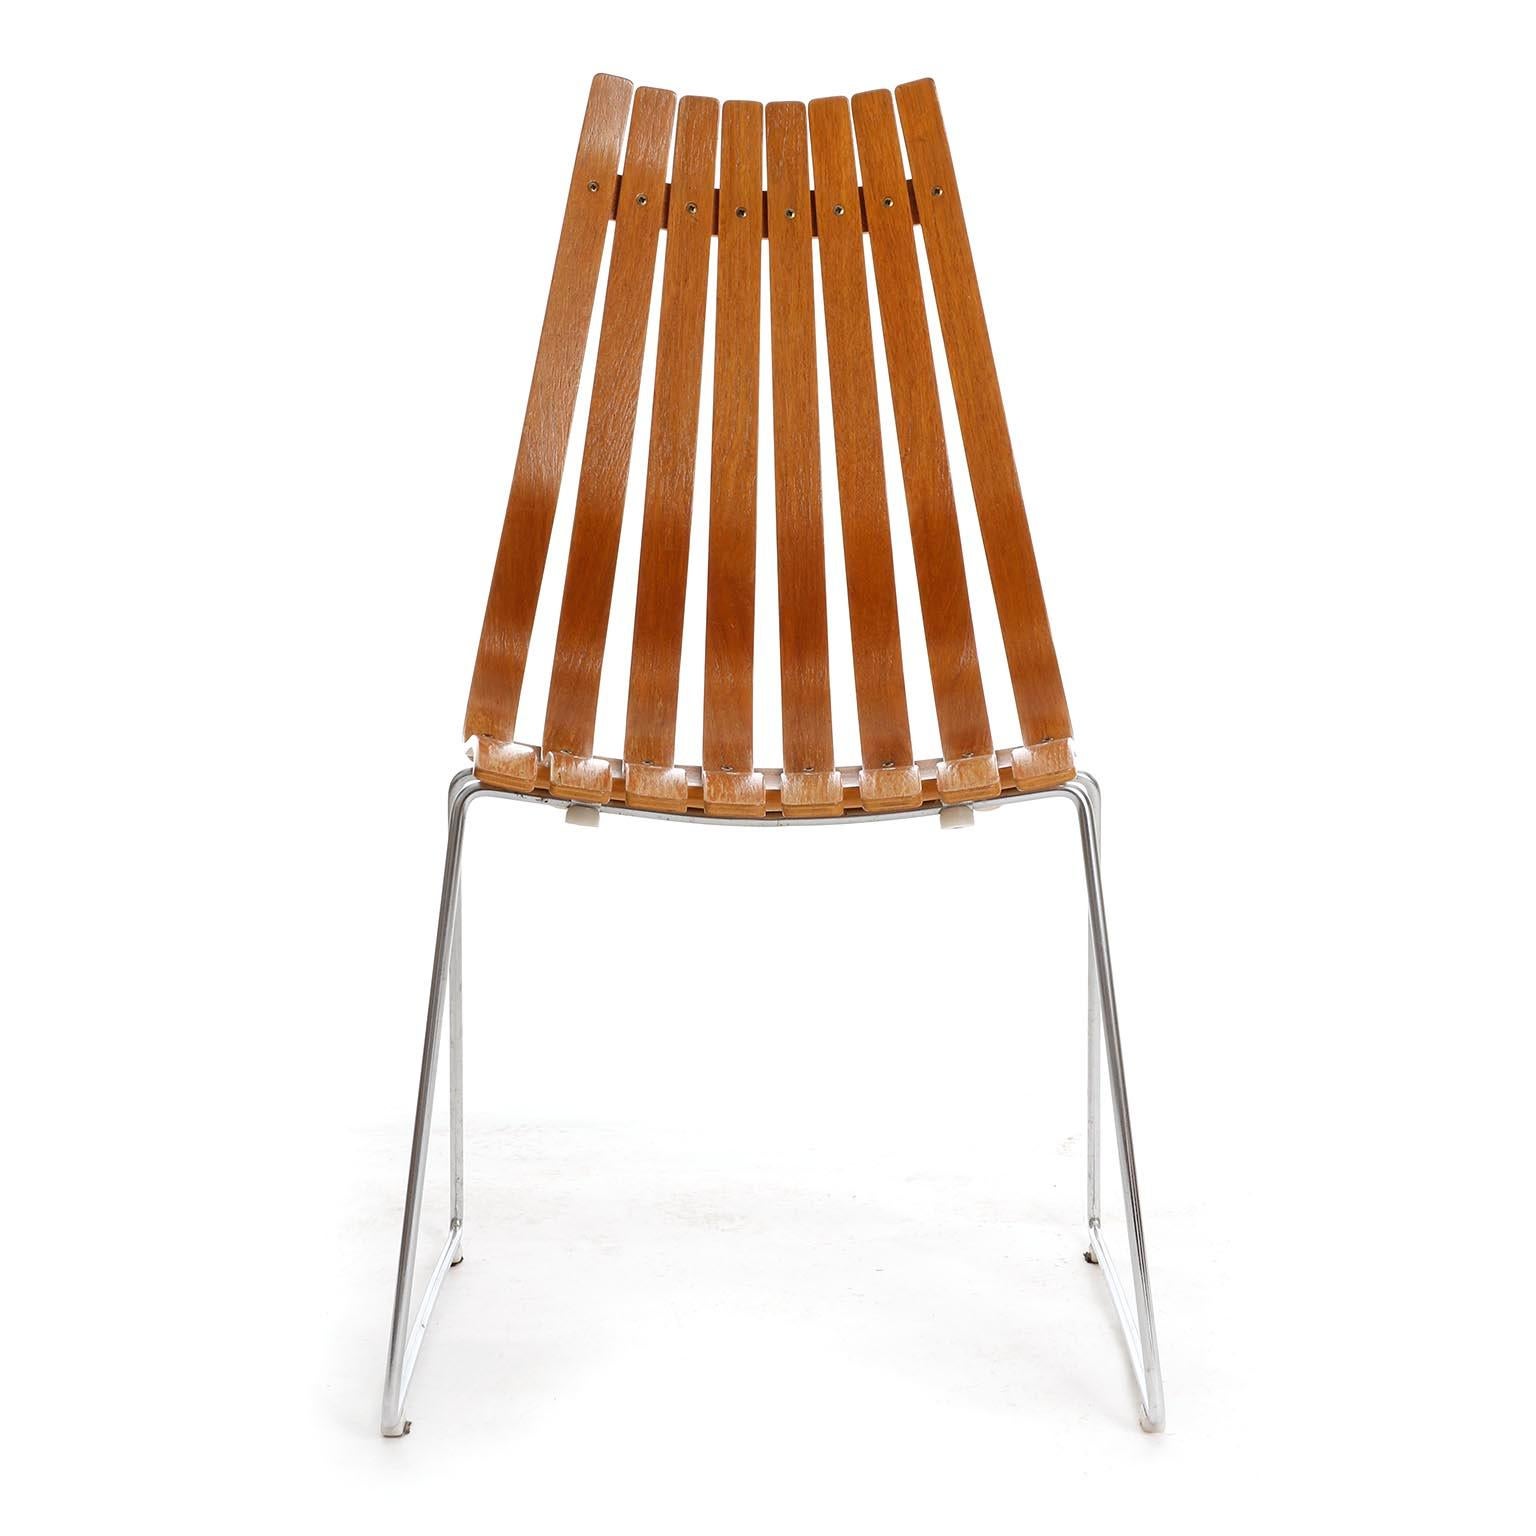 Ein Stuhl aus der Scandia-Serie, die 1957 vom norwegischen Designer Hans Brattrud entworfen und um 1960 von Hove Mobler produziert wurde.
Der Stuhl besteht aus einem verchromten Stahlgestell und die Sitzfläche aus gebogenen und gekrümmten Latten